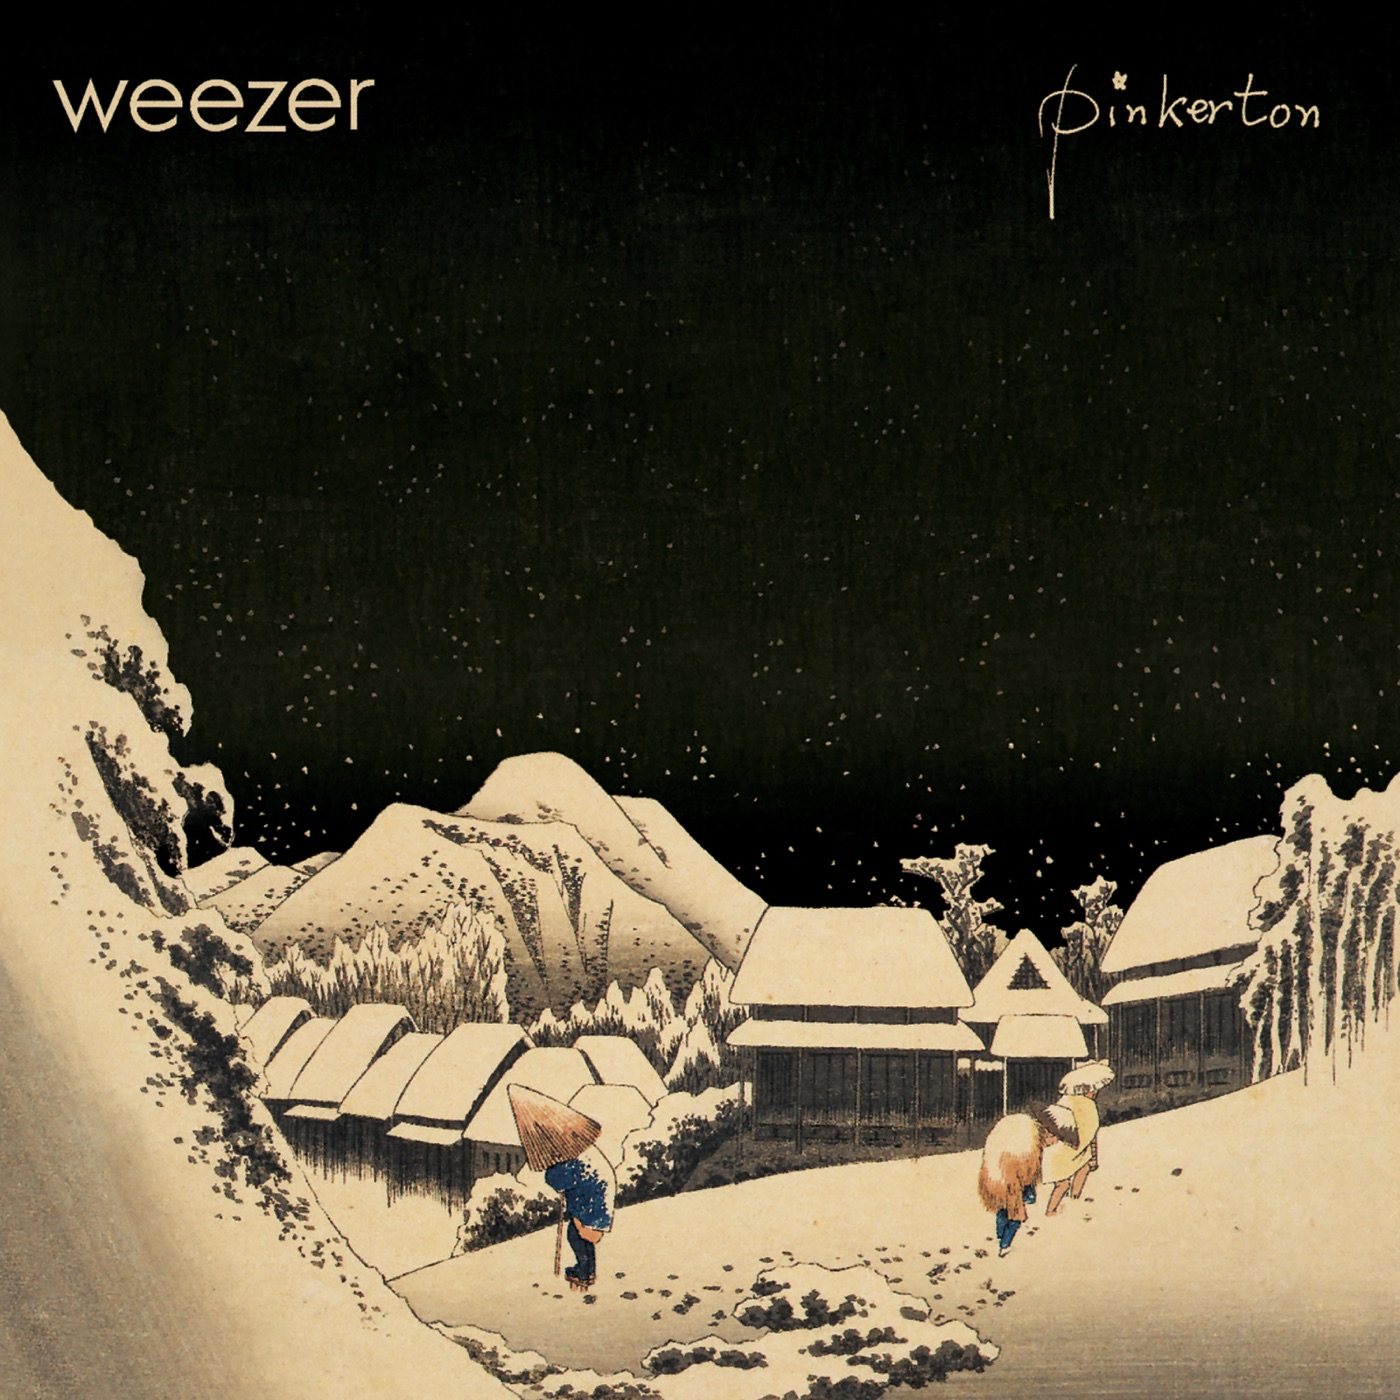 Pinkerton by Weezer